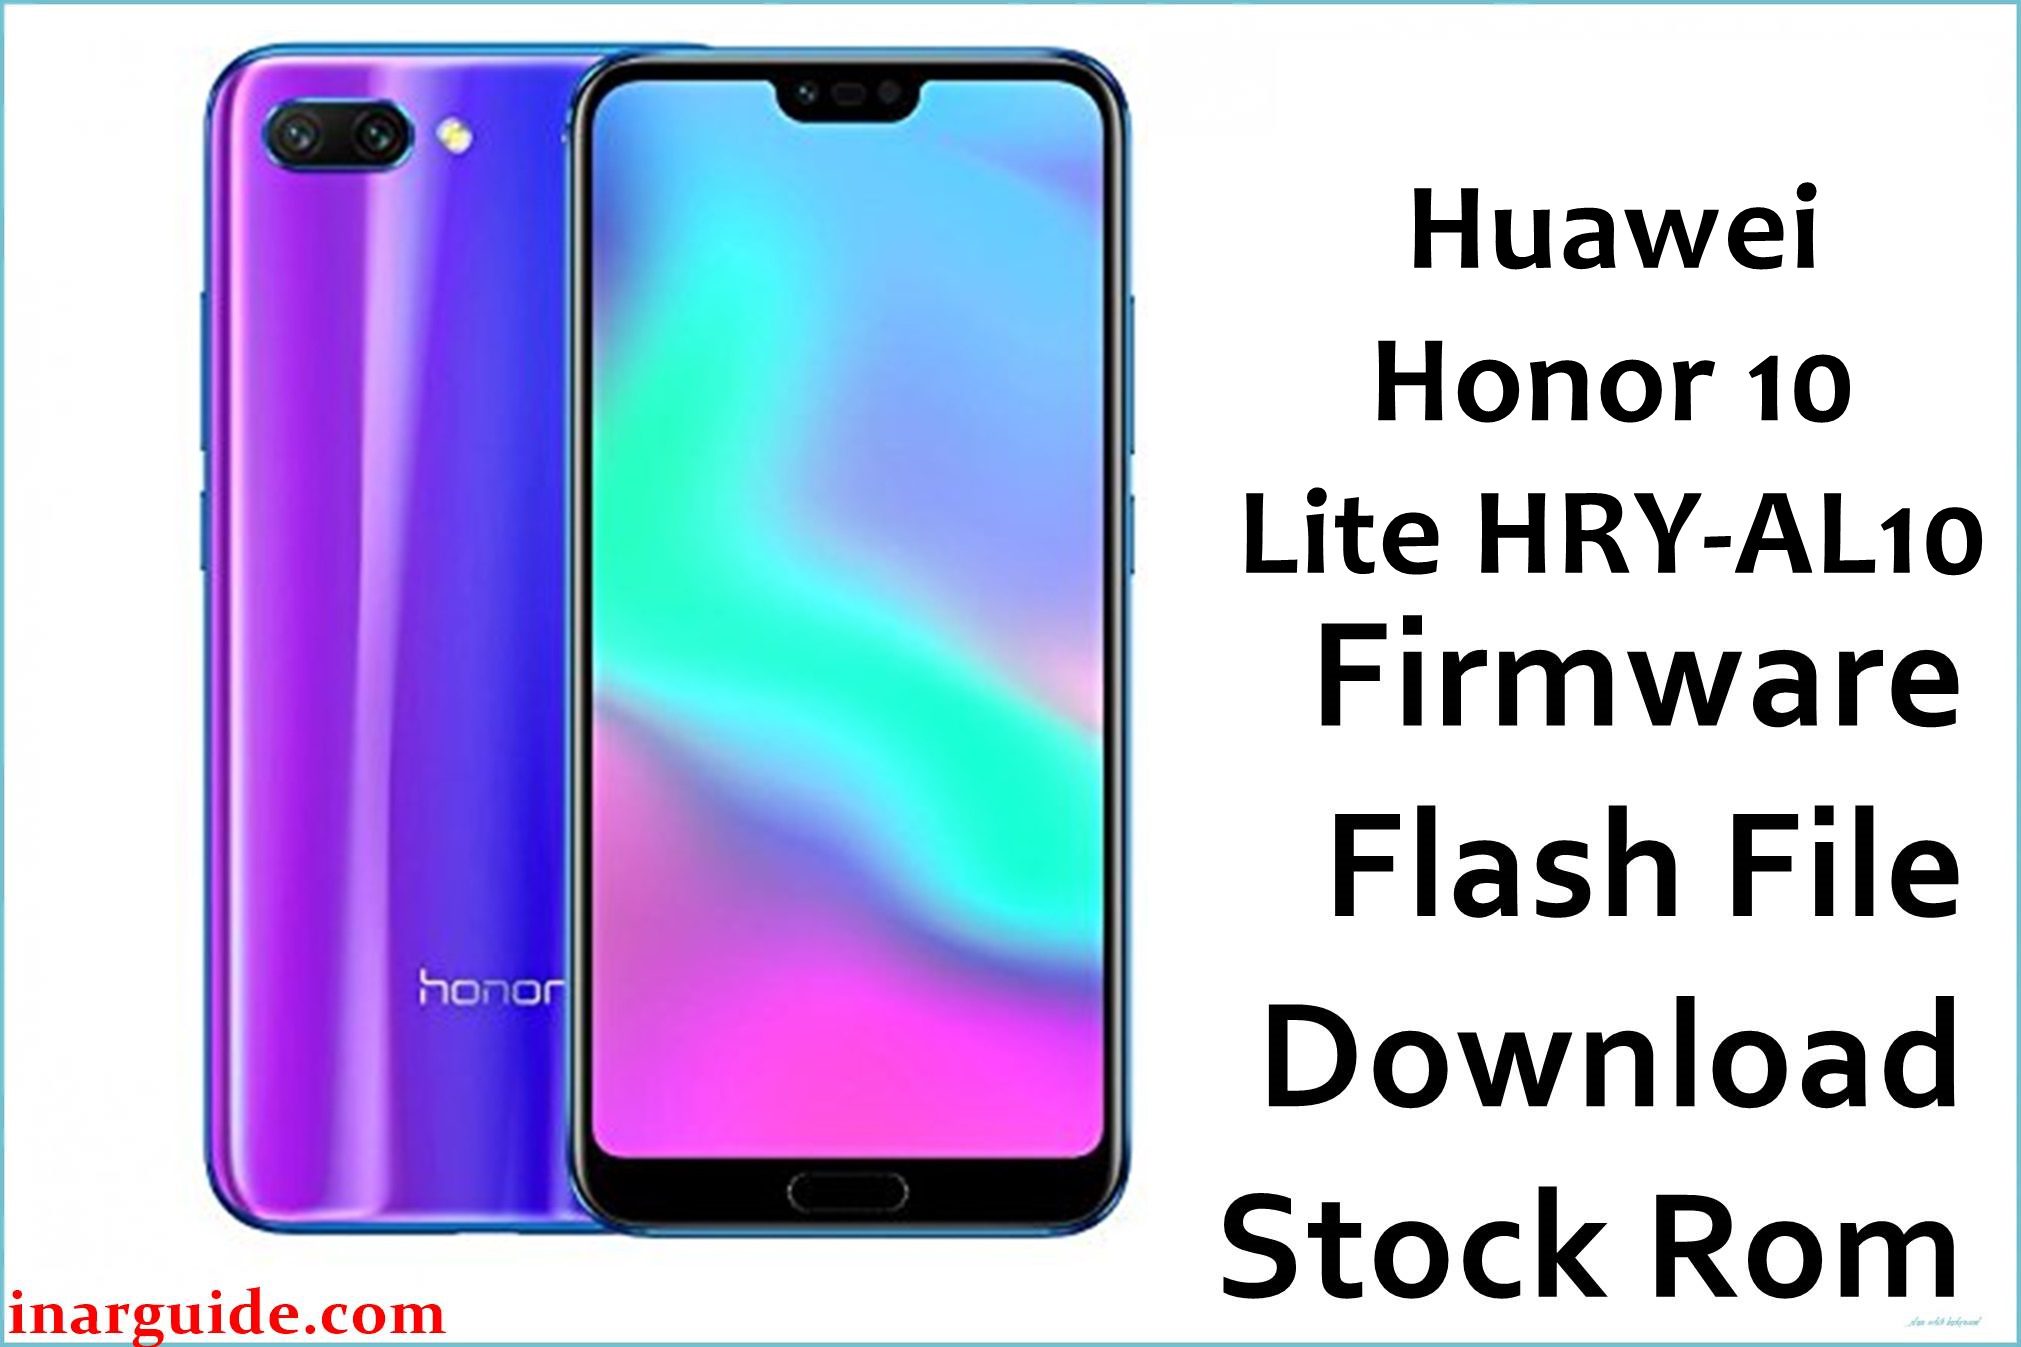 Huawei Honor 10 Lite HRY AL10